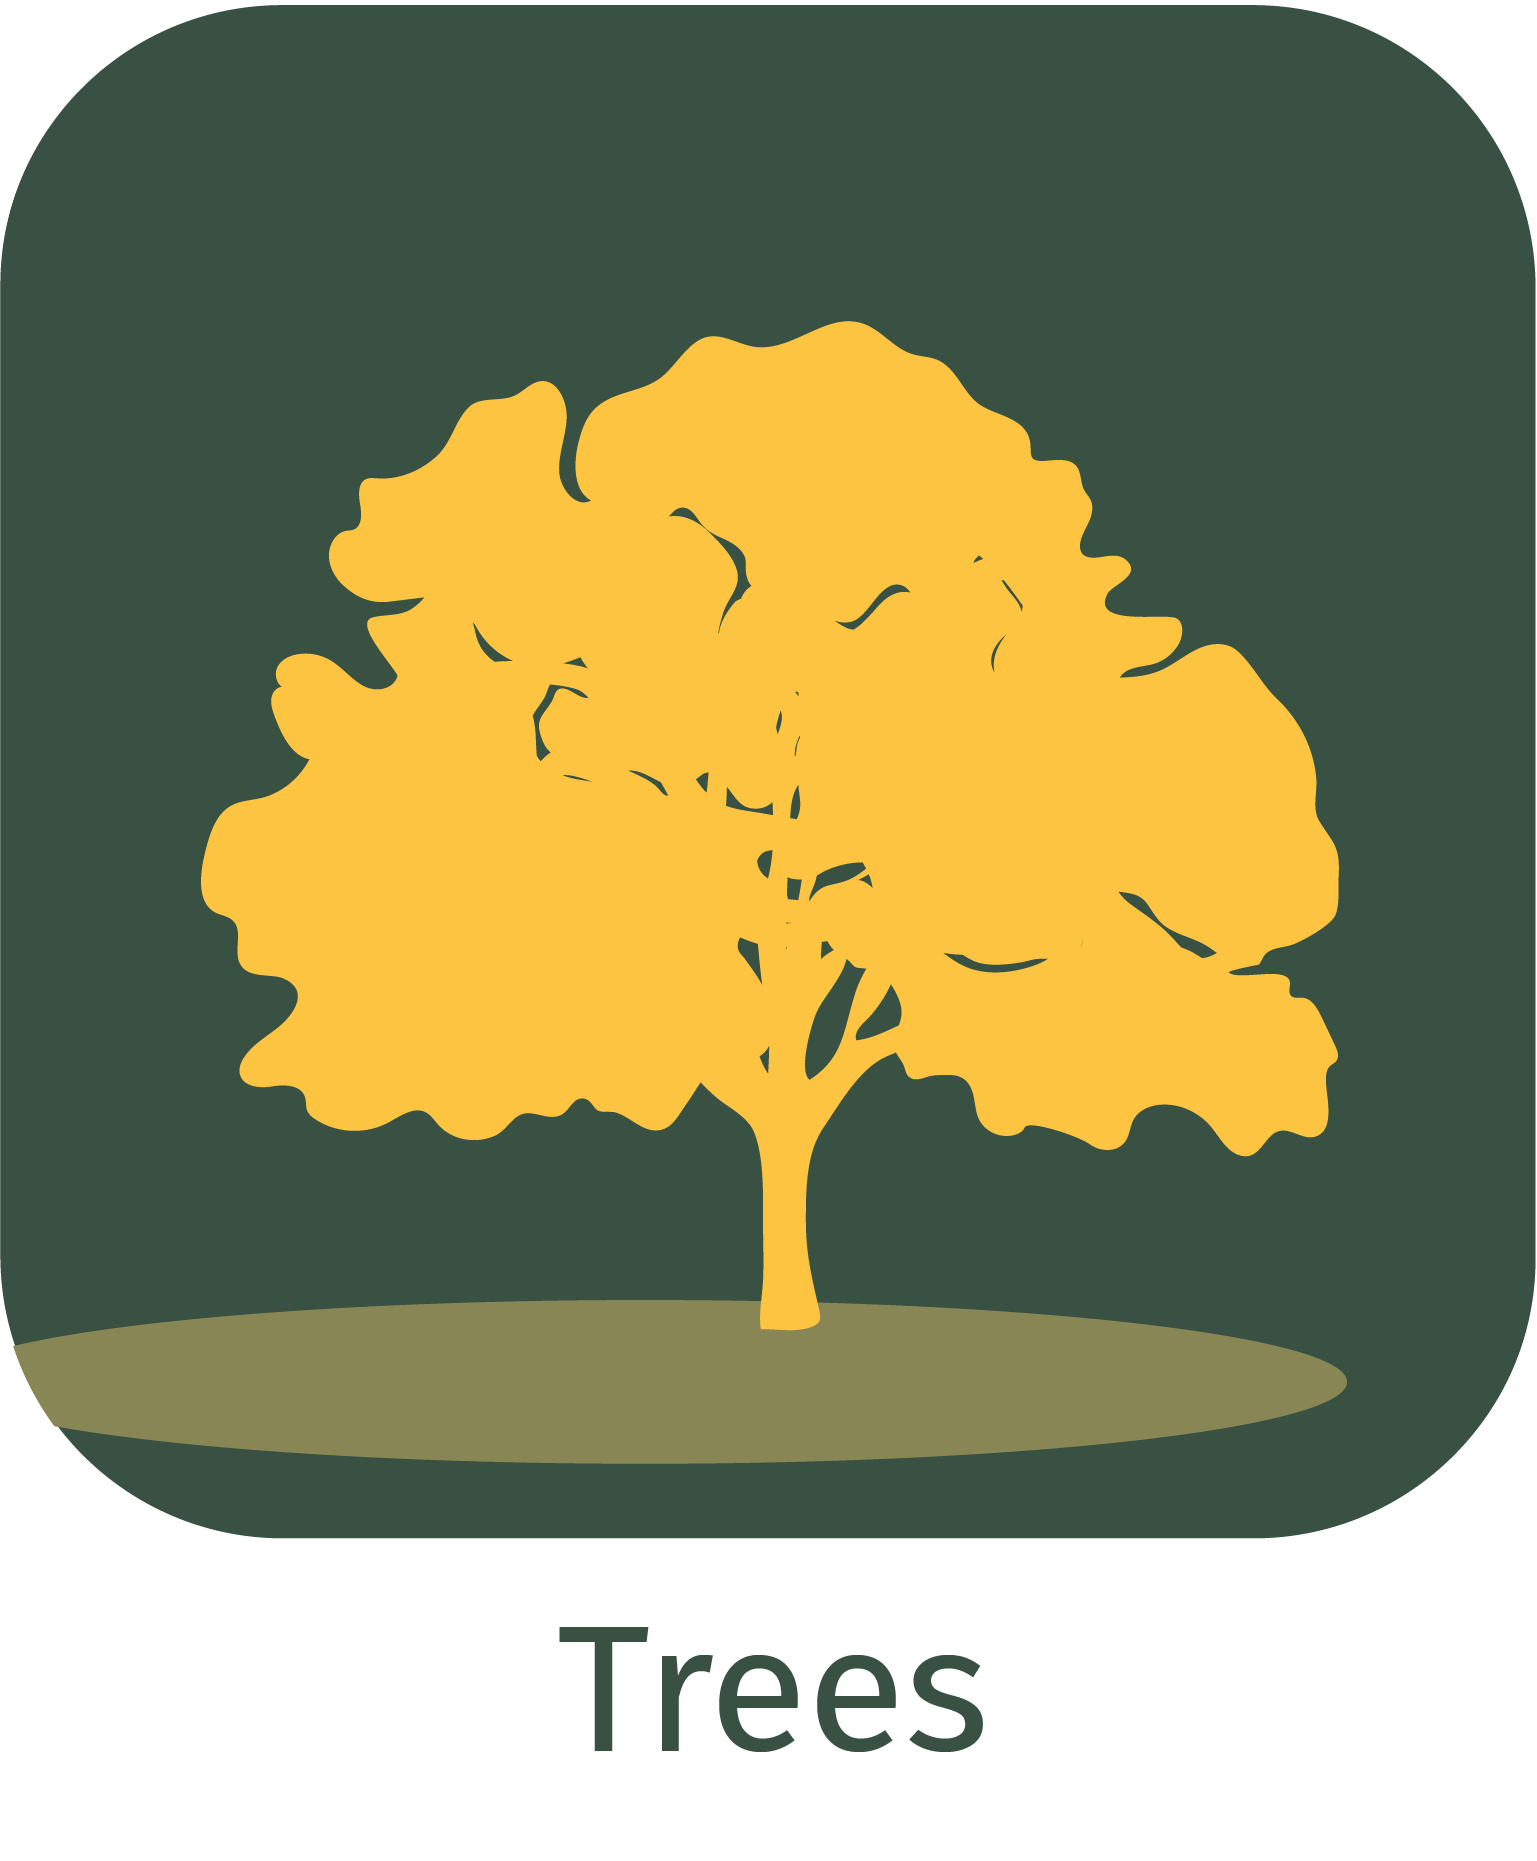 trees app icon